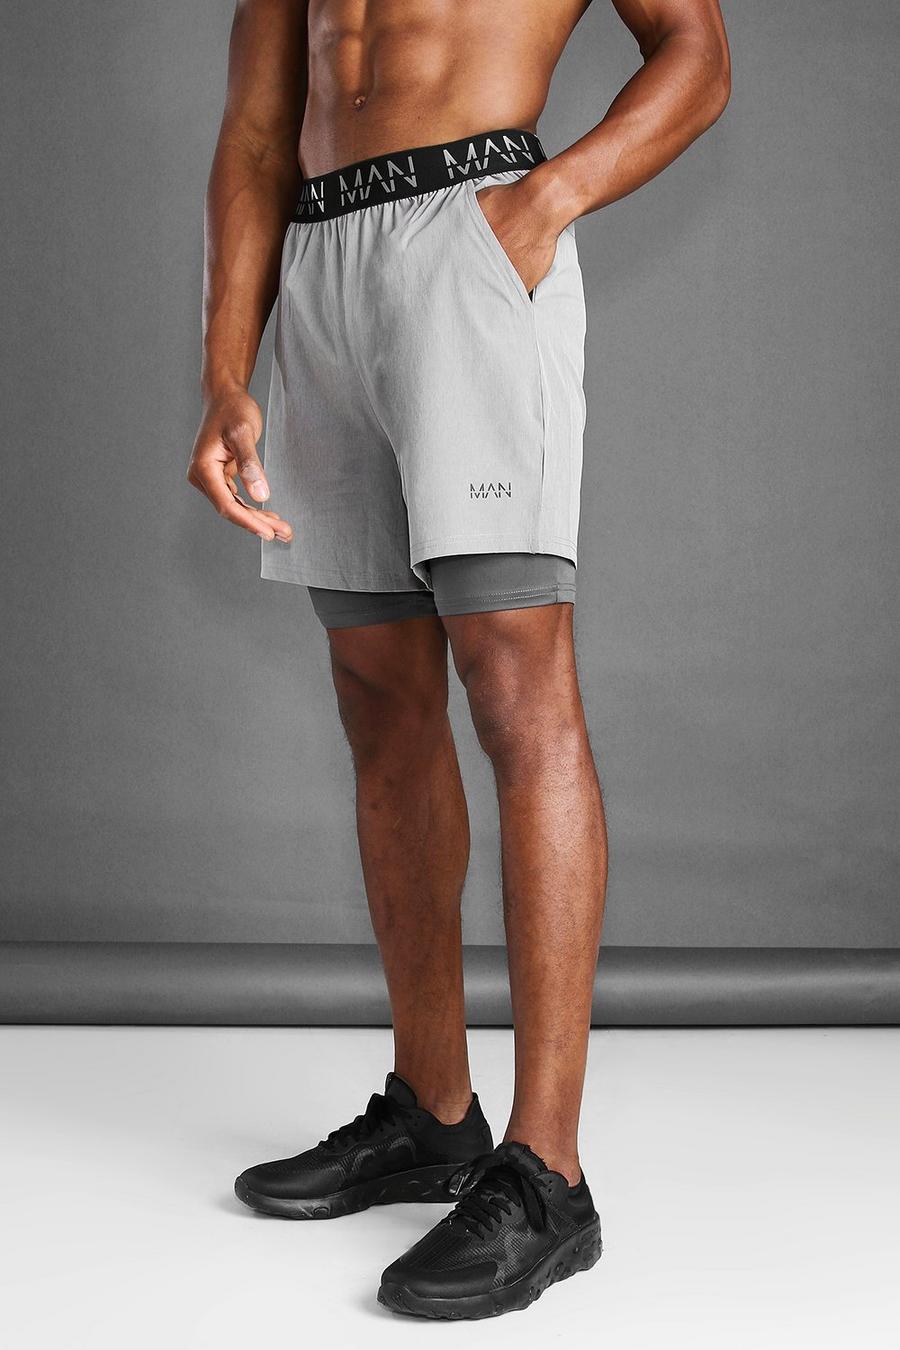 Pantalón corto de marga 2 en 1 MAN Active, Marga gris image number 1